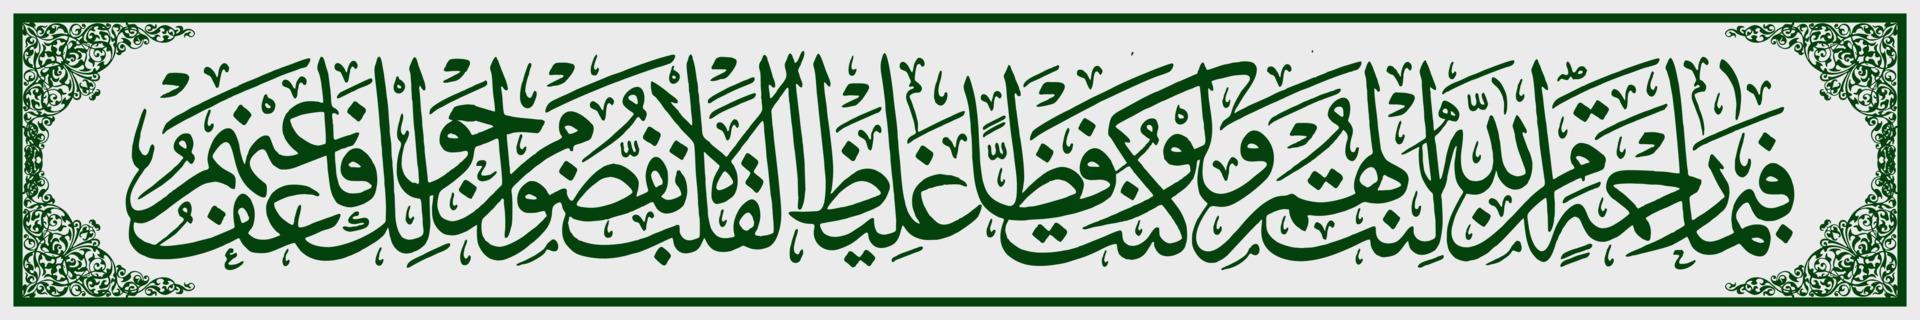 caligrafía árabe, al qur'an surah ali imran 159, traduce entonces por la gracia de allah muhammad sé amable con ellos. si hubieras sido duro y duro de corazón, vector